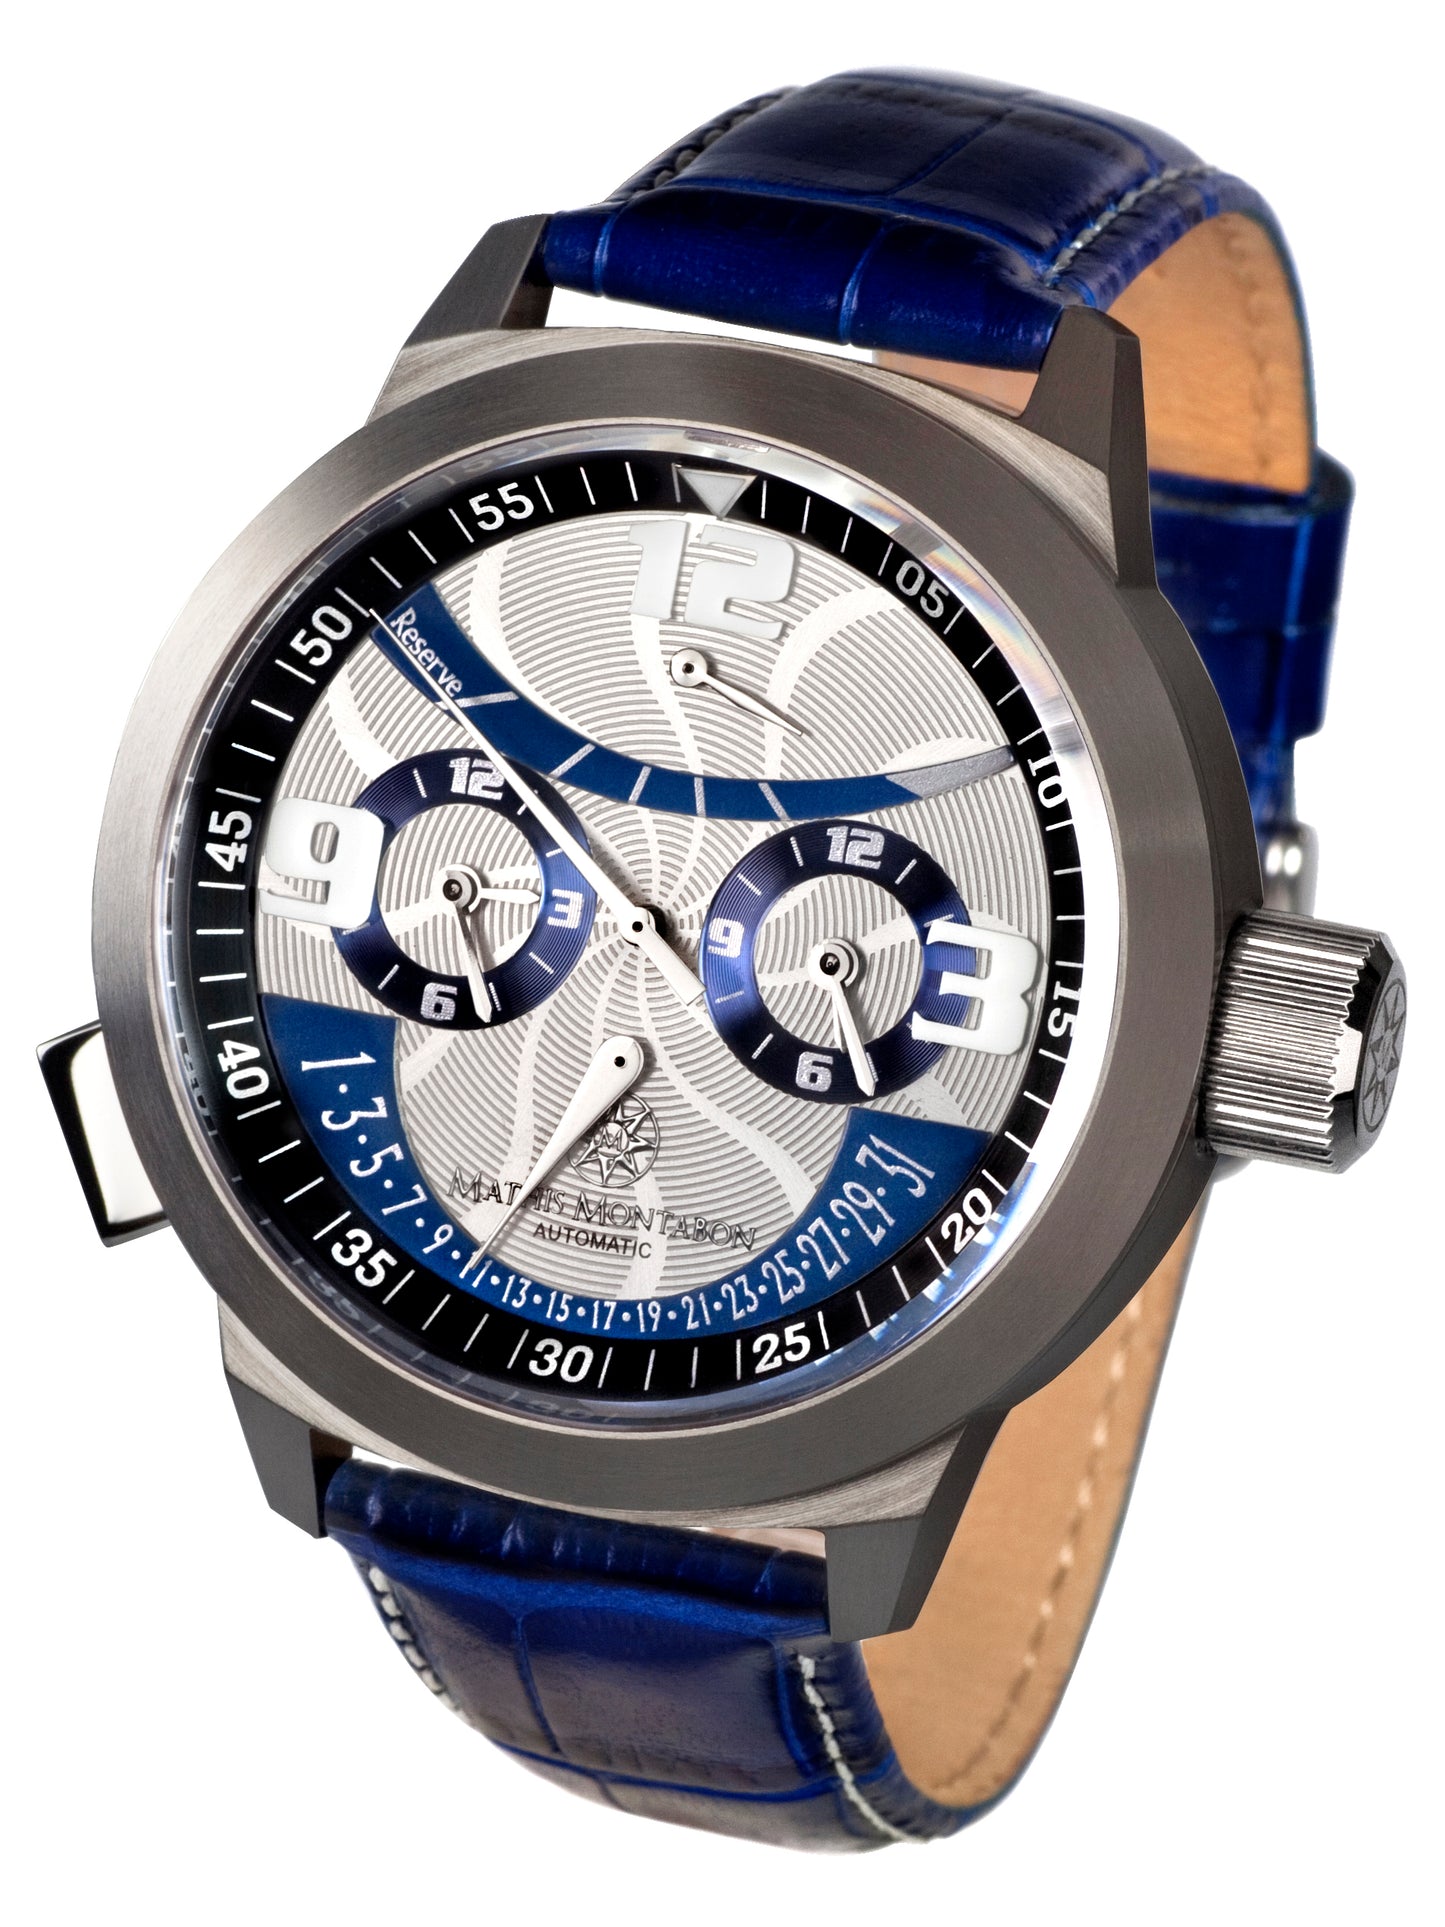 Automatic watches — Réserve de Marche — Mathis Montabon — blau